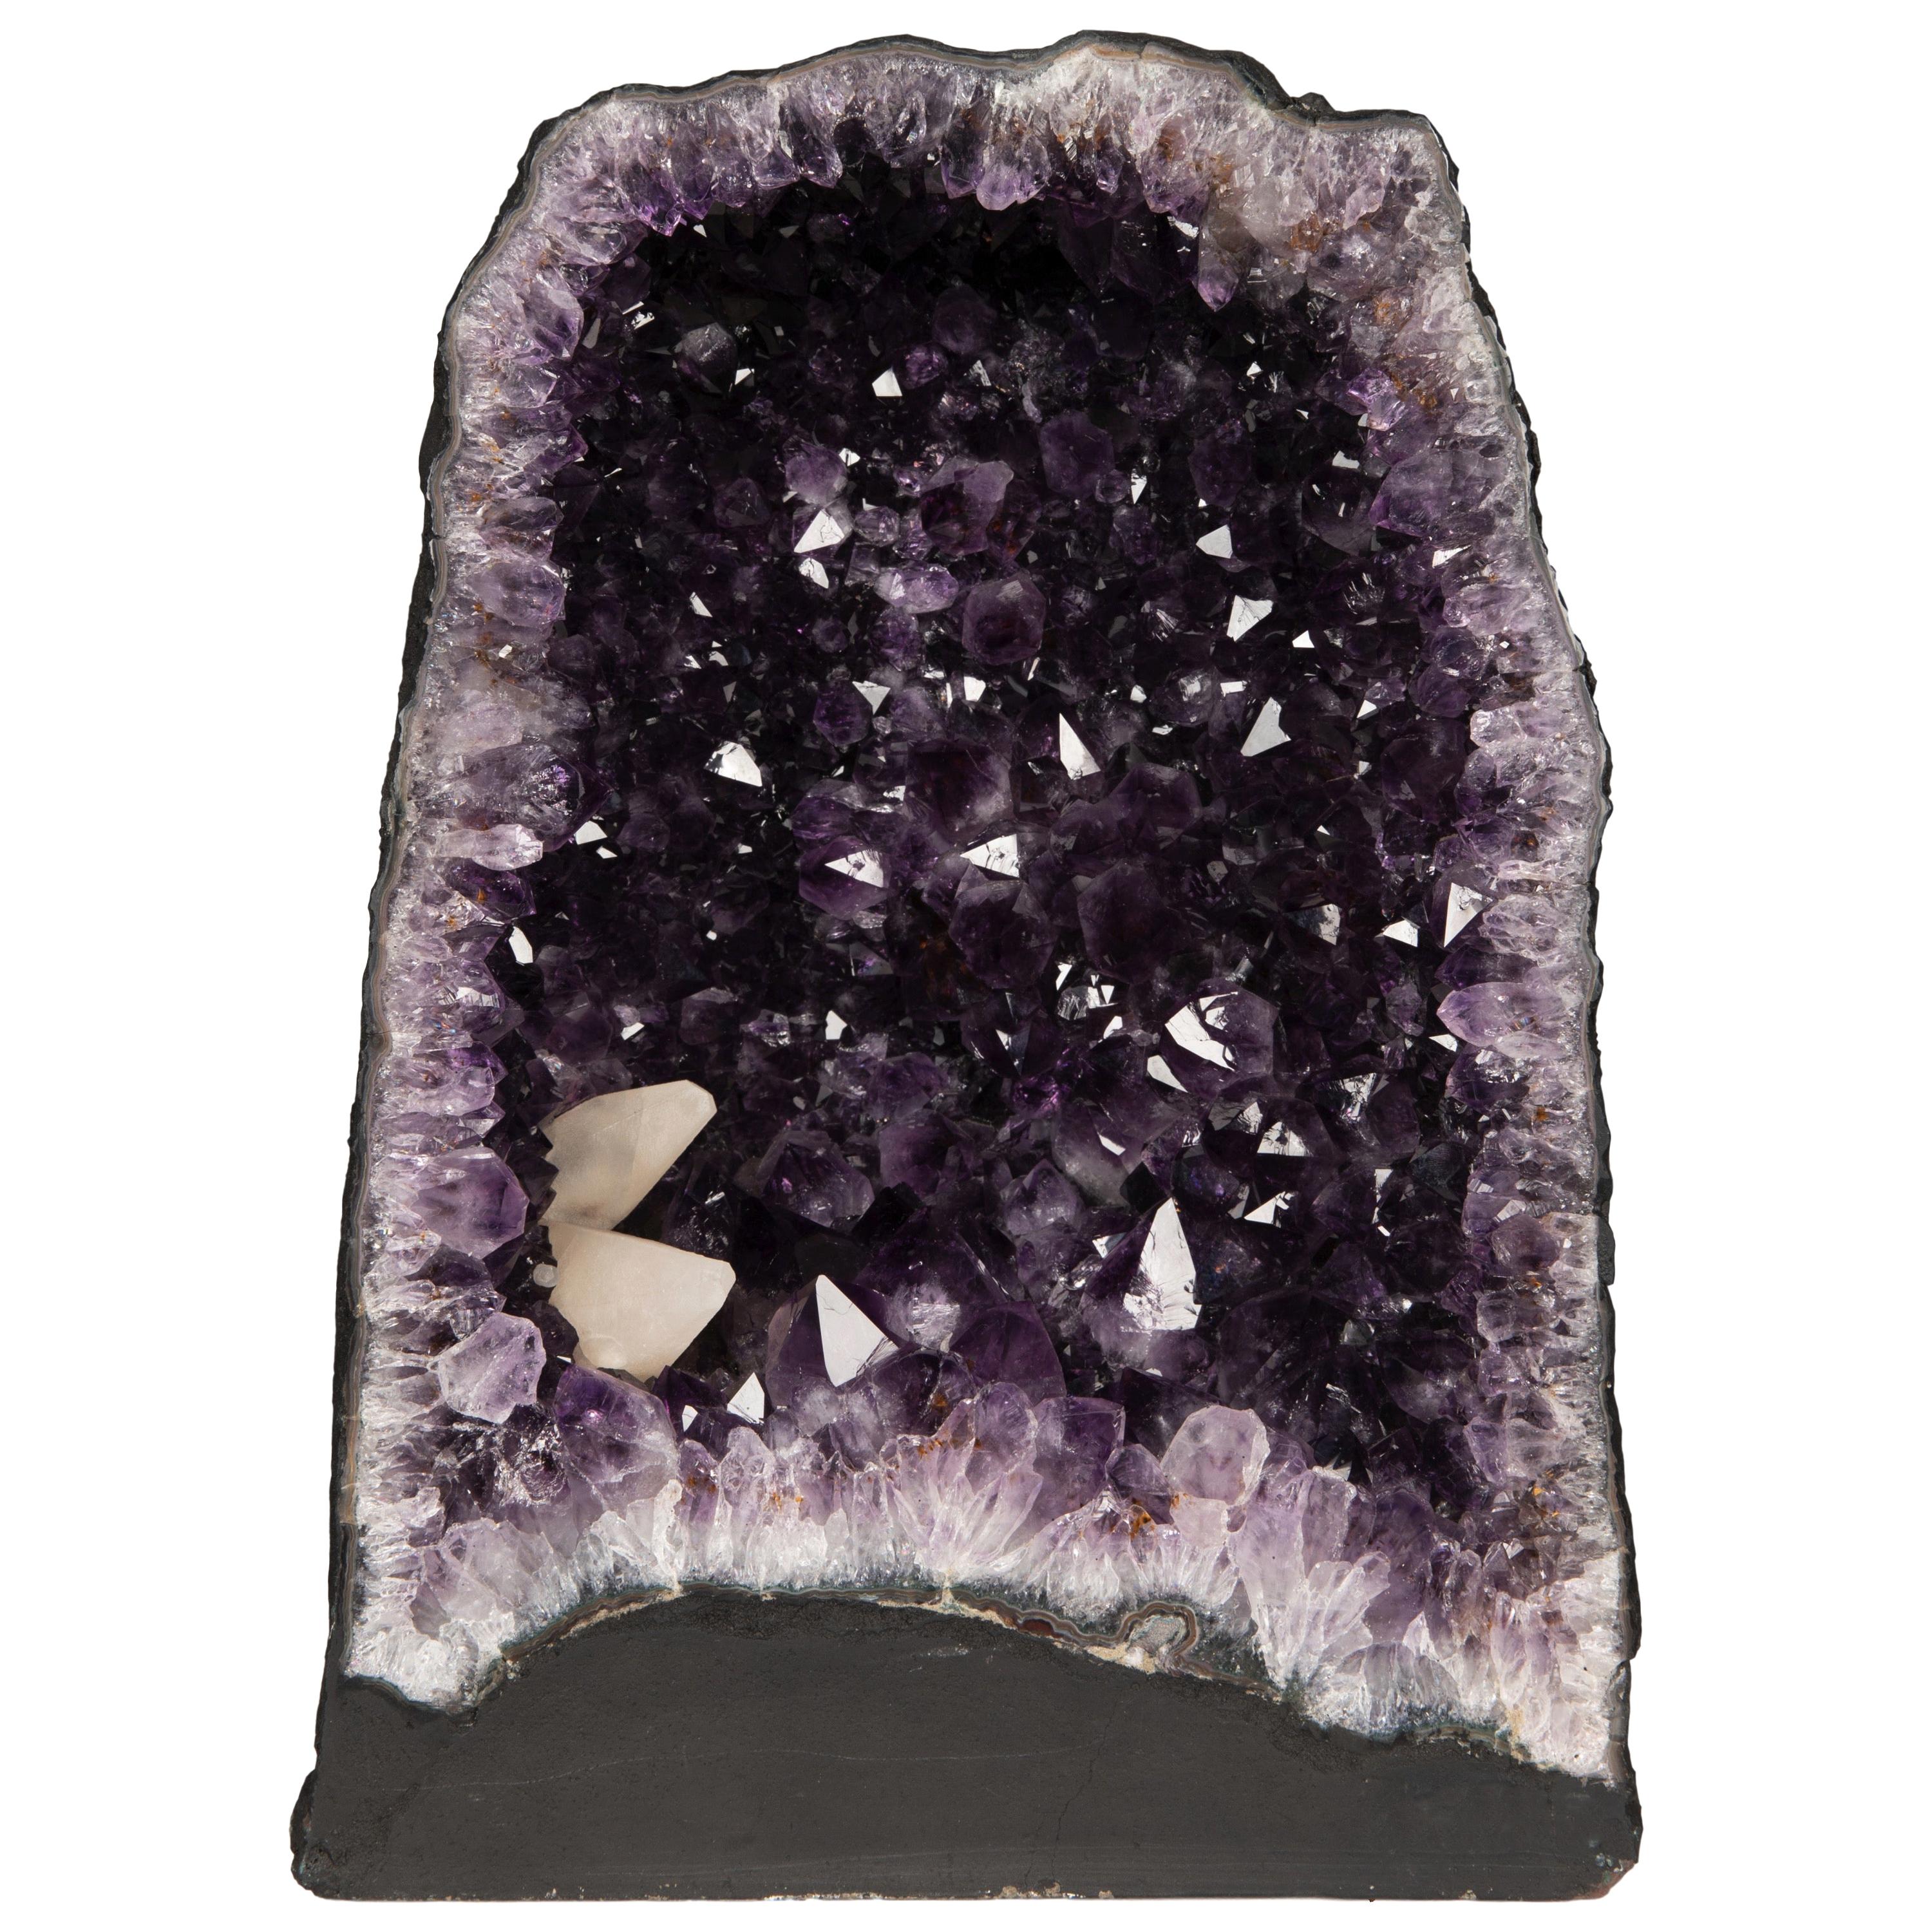 Halb-Geode-Amethyst in Violett in Form einer Kathedrale oder einer Kapelle in Kalifornien